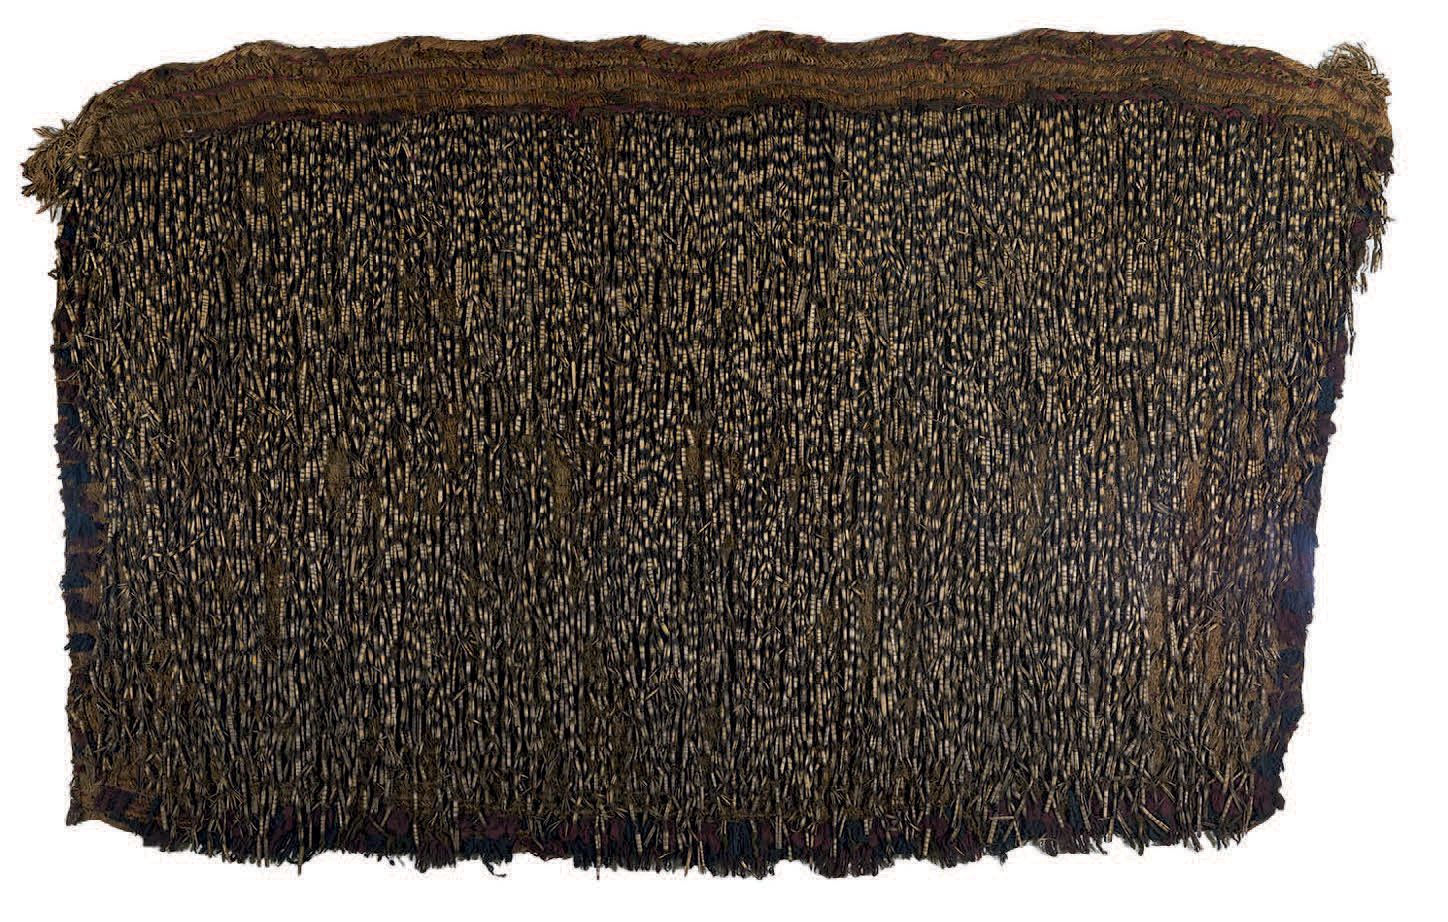 Null Pihepihe Maori cloak
New Zealand Textile, plant fibers H. 84 cm - L. 136 cm&hellip;